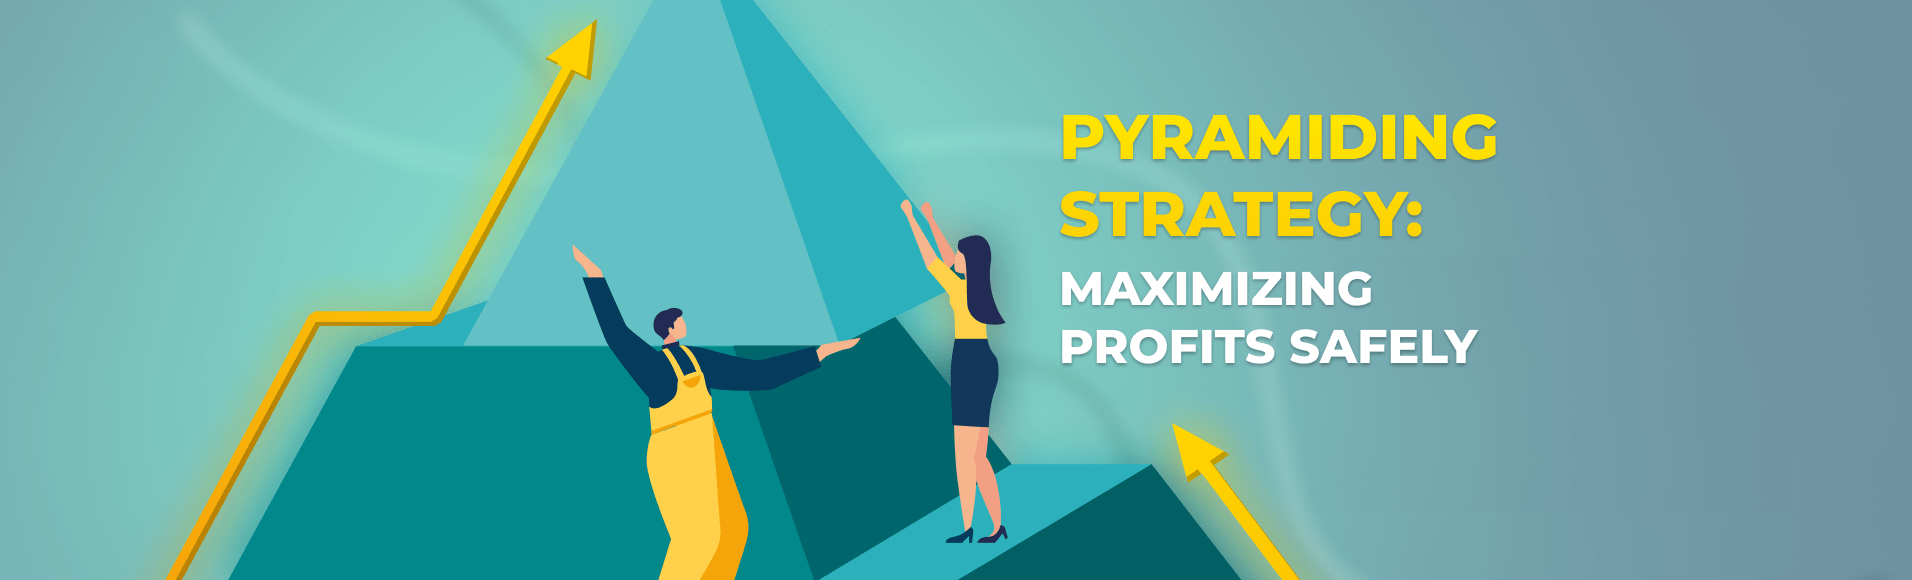 Strategi Pyramiding: Memaksimumkan Keuntungan Dengan Selamat